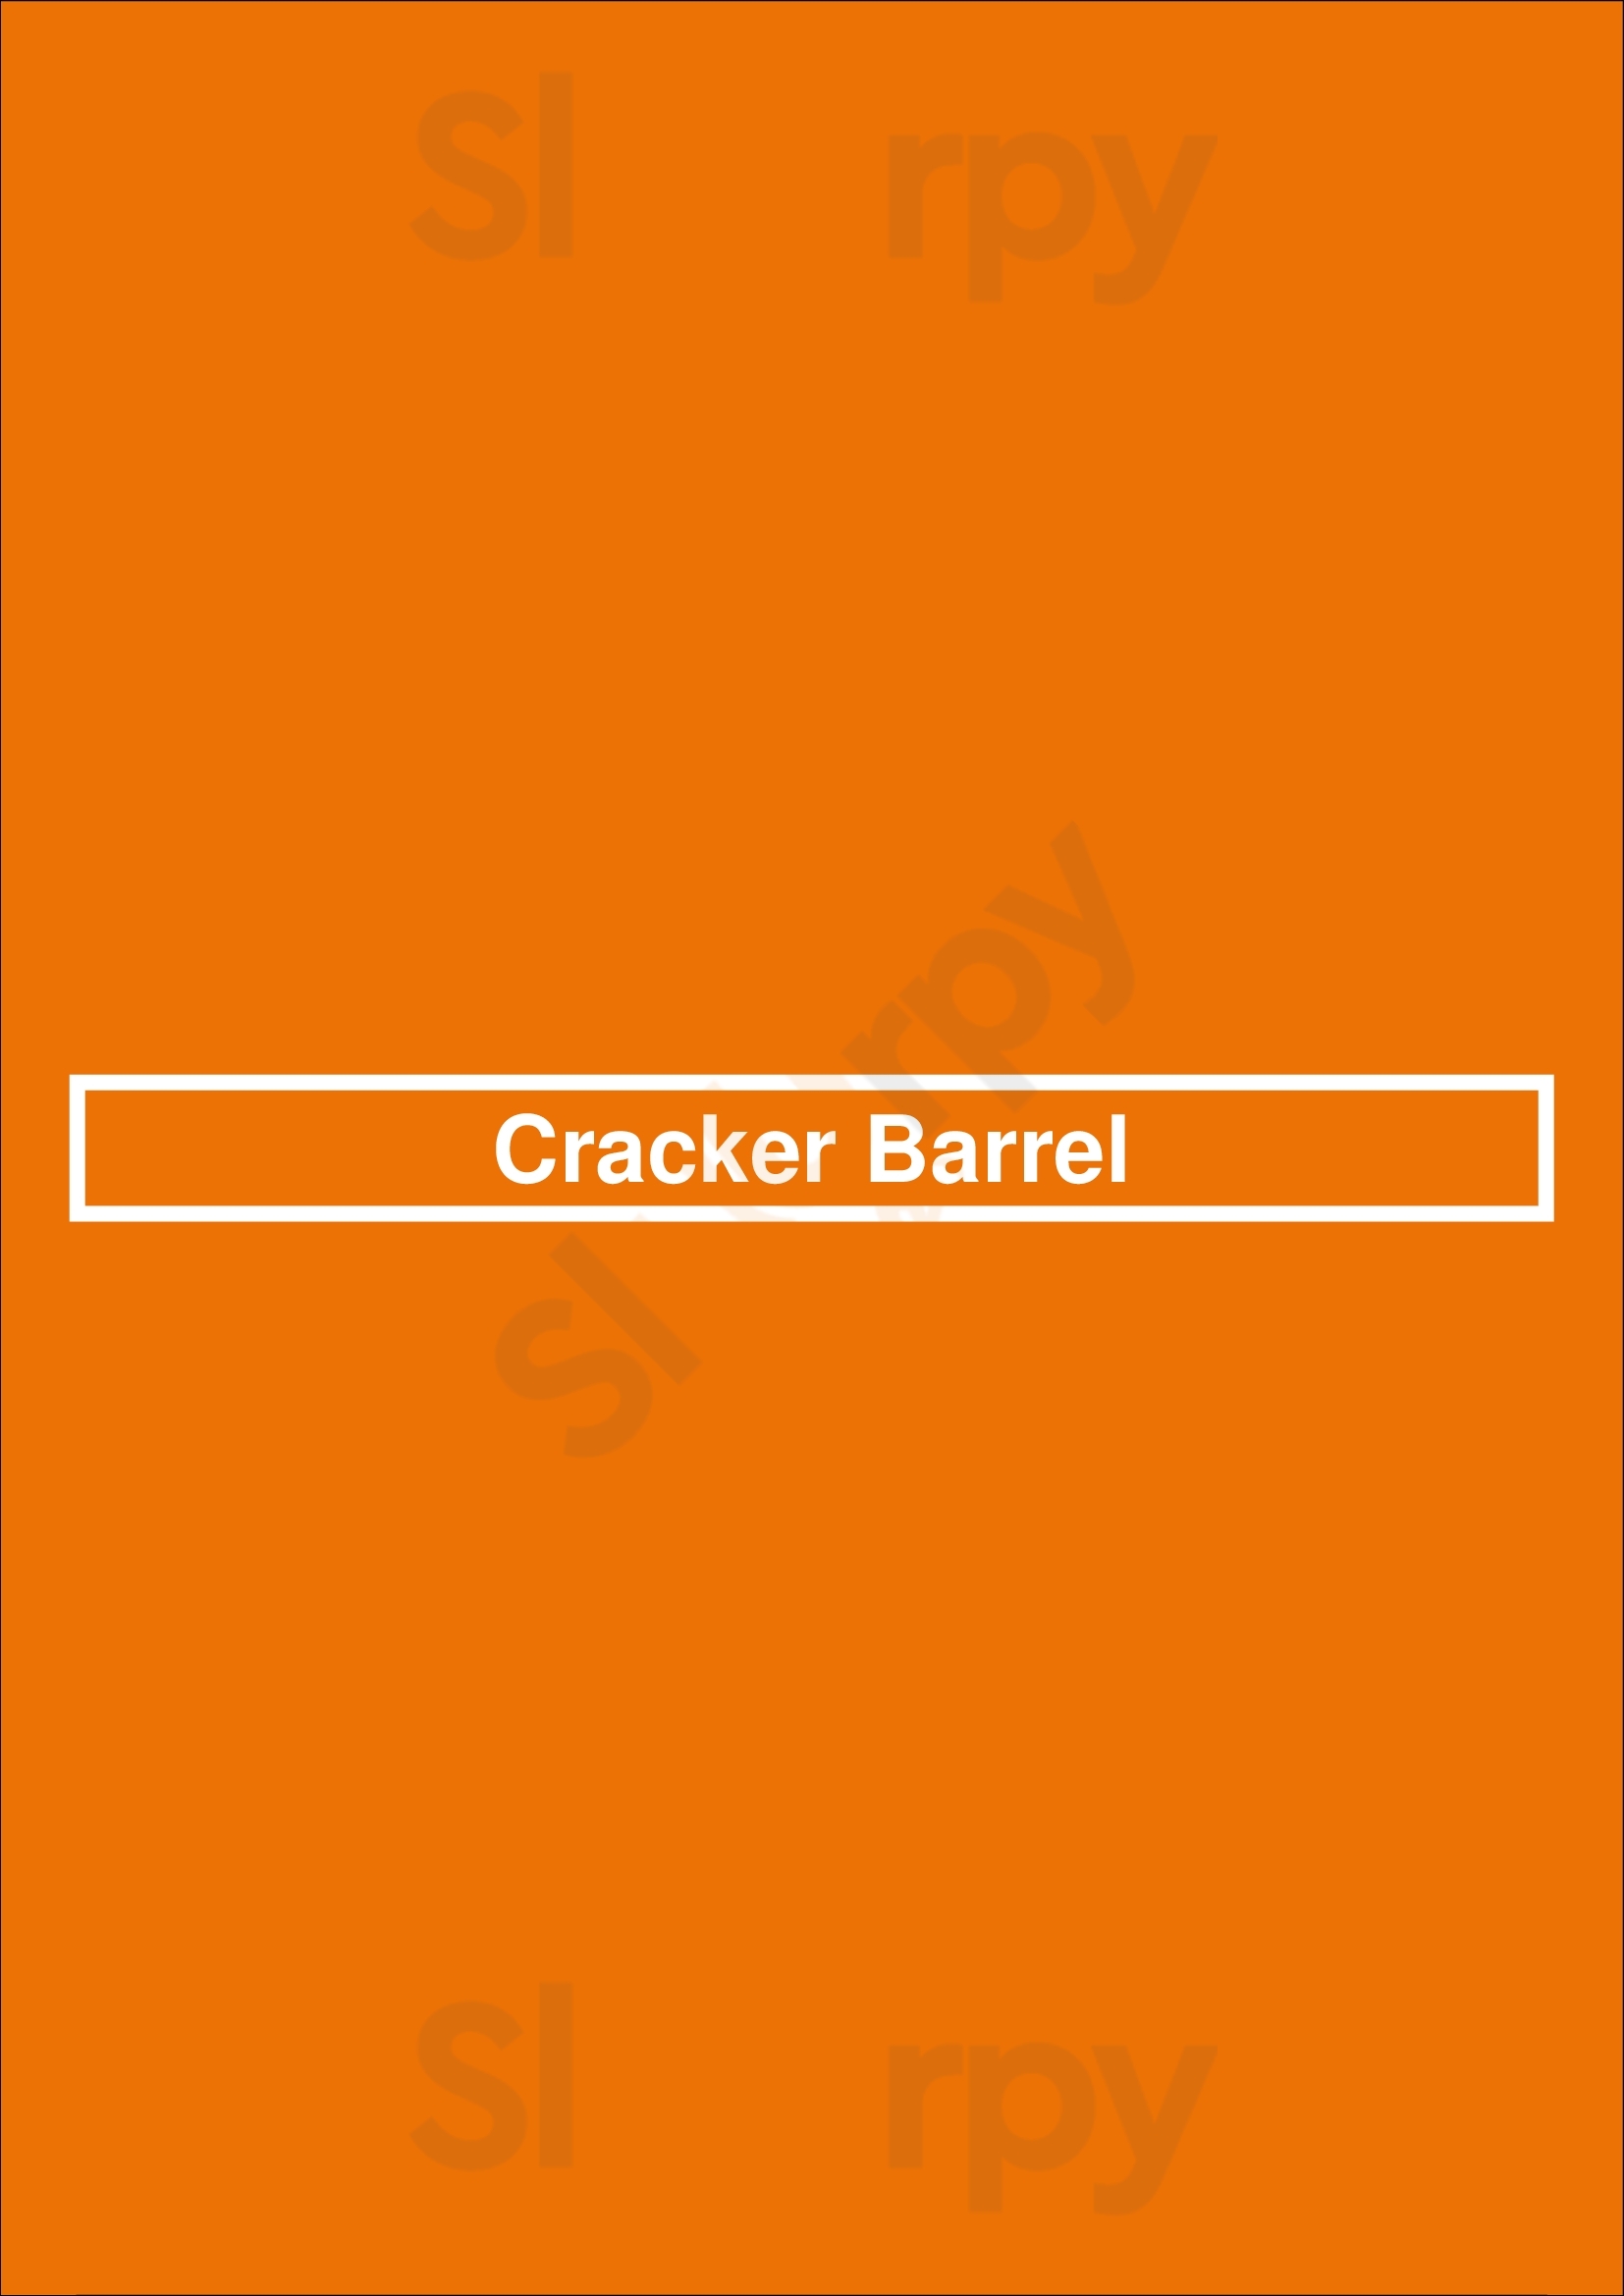 Cracker Barrel Cleveland Menu - 1